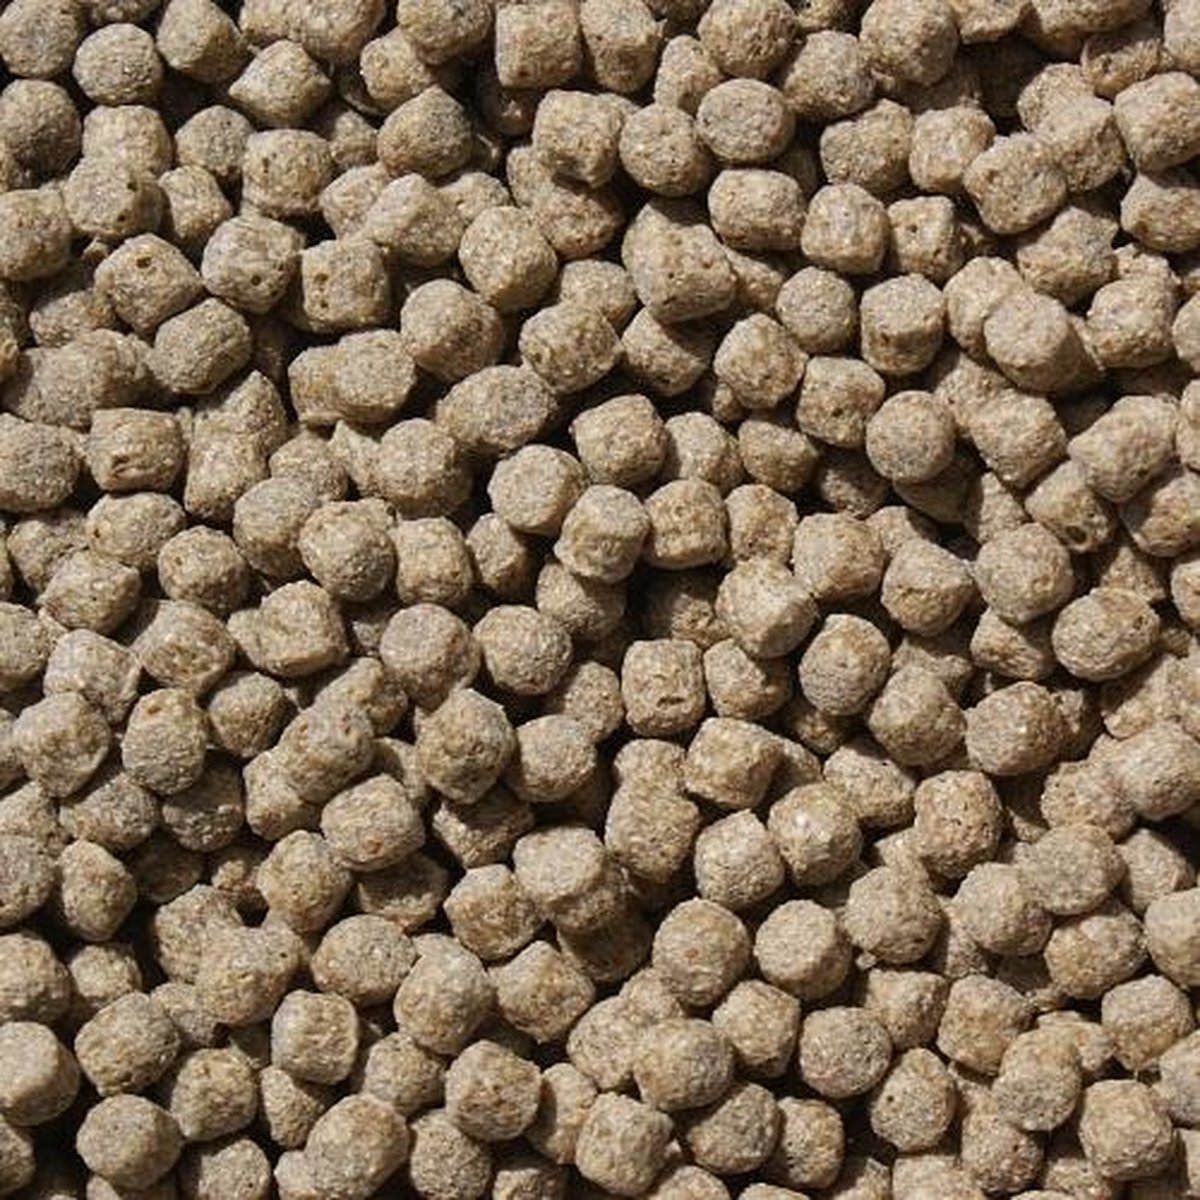 Koivoer Wheat Germ (2KG)(3mm) - Wintervoer